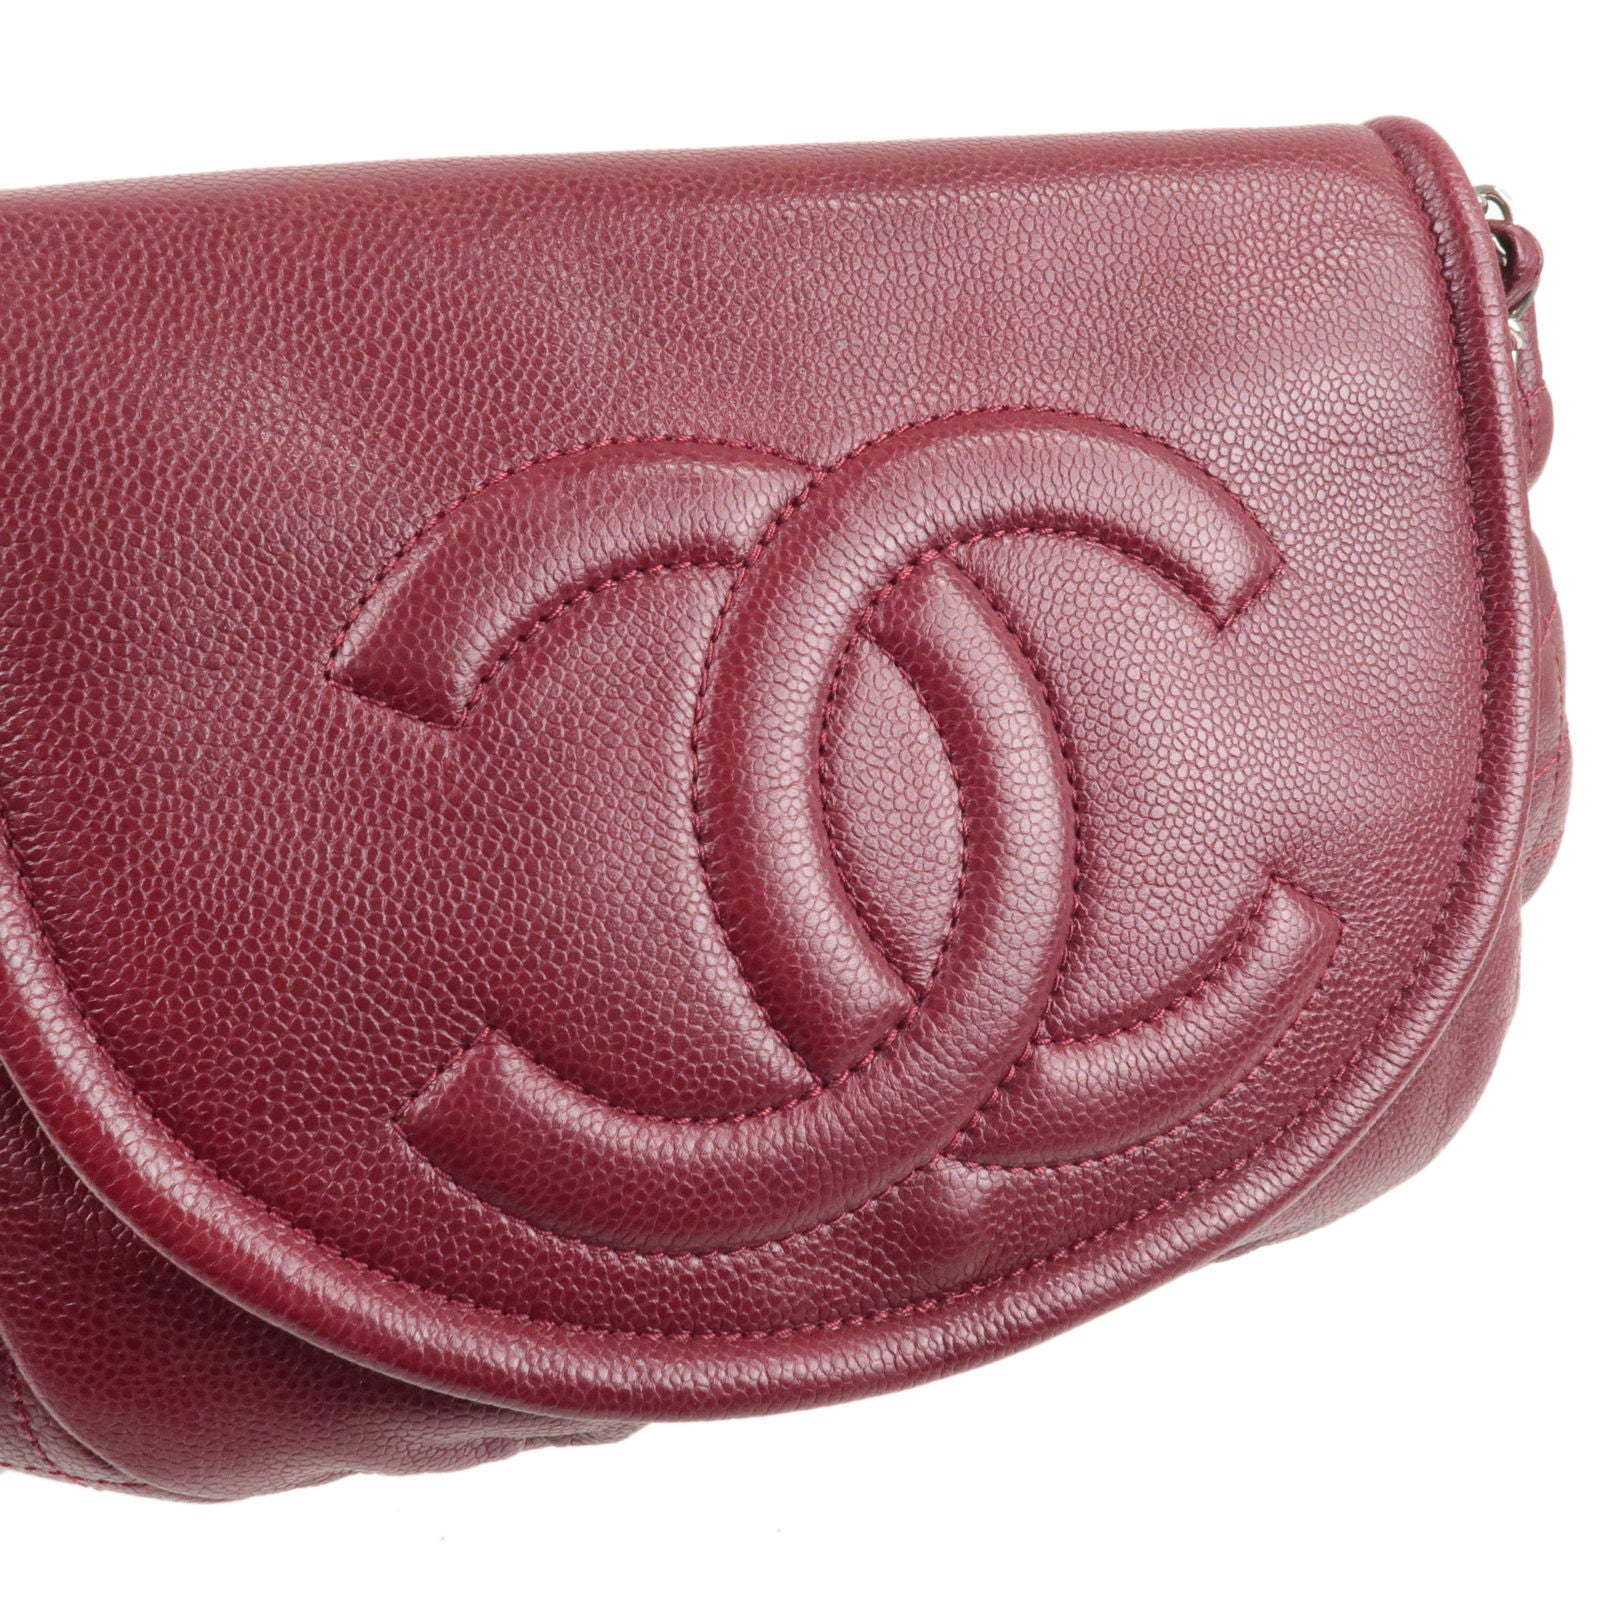 Chanel Half-Moon Woc Clutch Bag